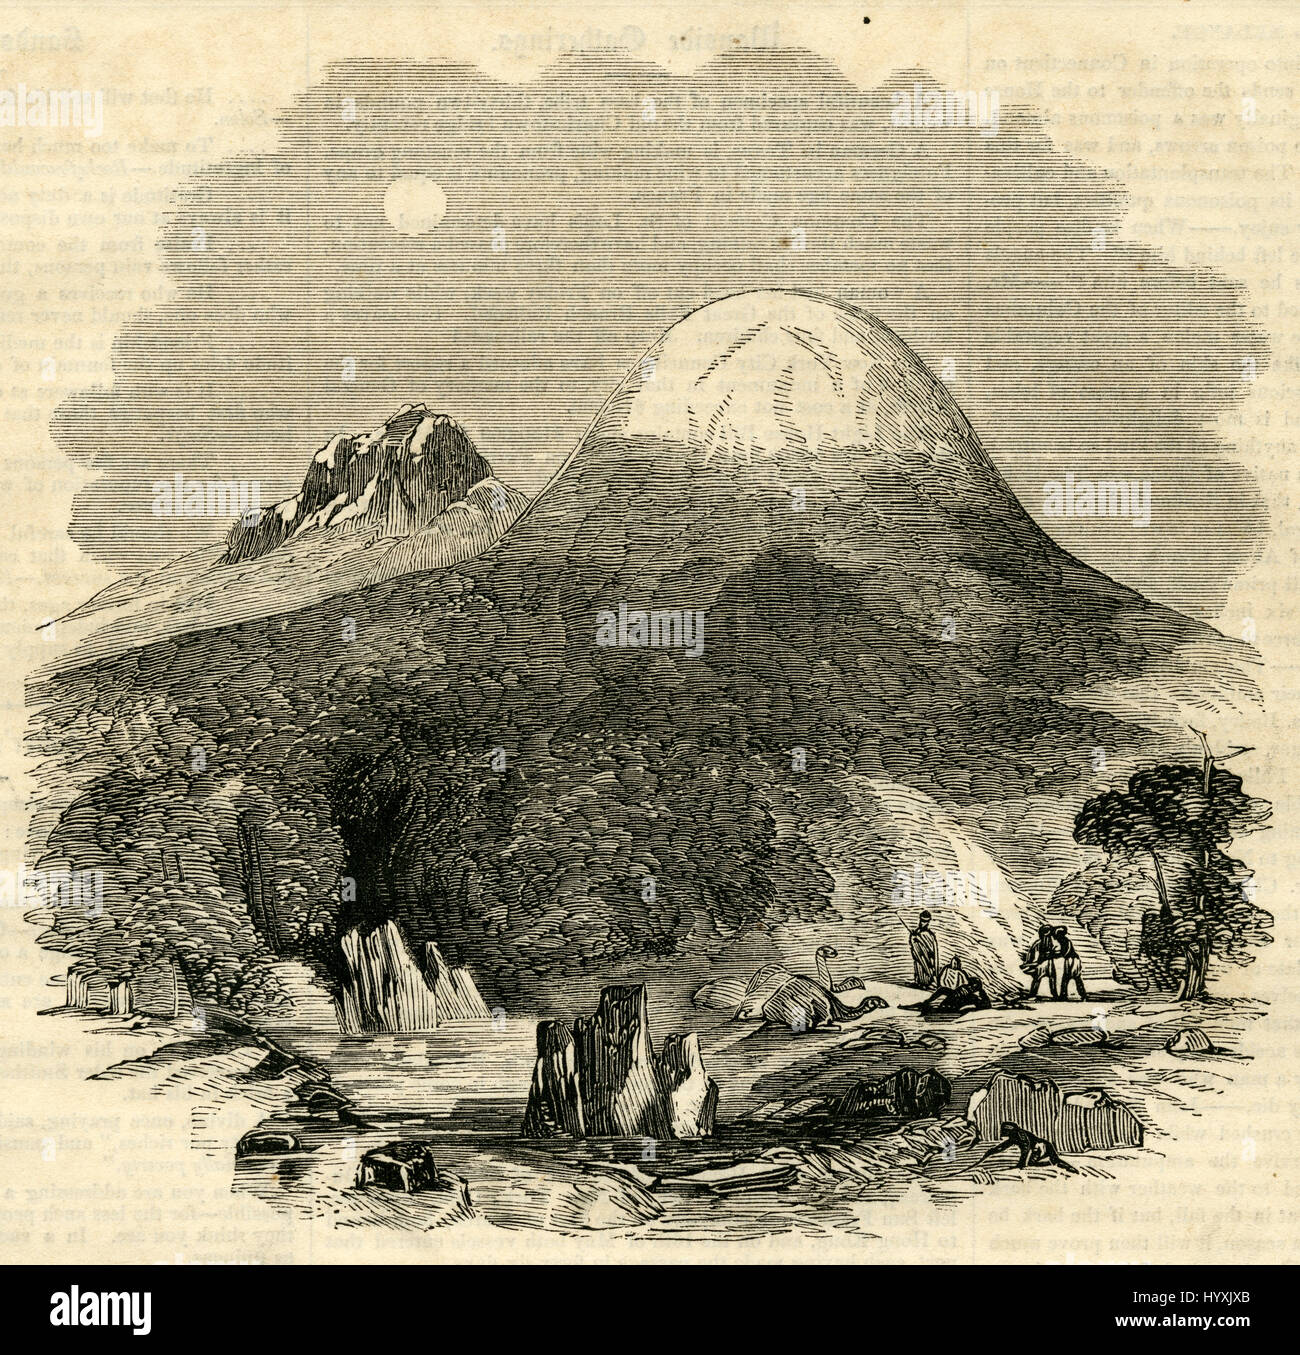 Antiken 1854 Gravur, "The Snowy Mountain des östlichen Afrika." Der deutsche Missionar und Afrikaforscher, Johann Rebmann war der erste europäische Entdecker, Bericht von Schnee und Gletscher auf dem Kilimandscharo in Tansania im Jahr 1848. QUELLE: ORIGINAL GRAVUR. Stockfoto